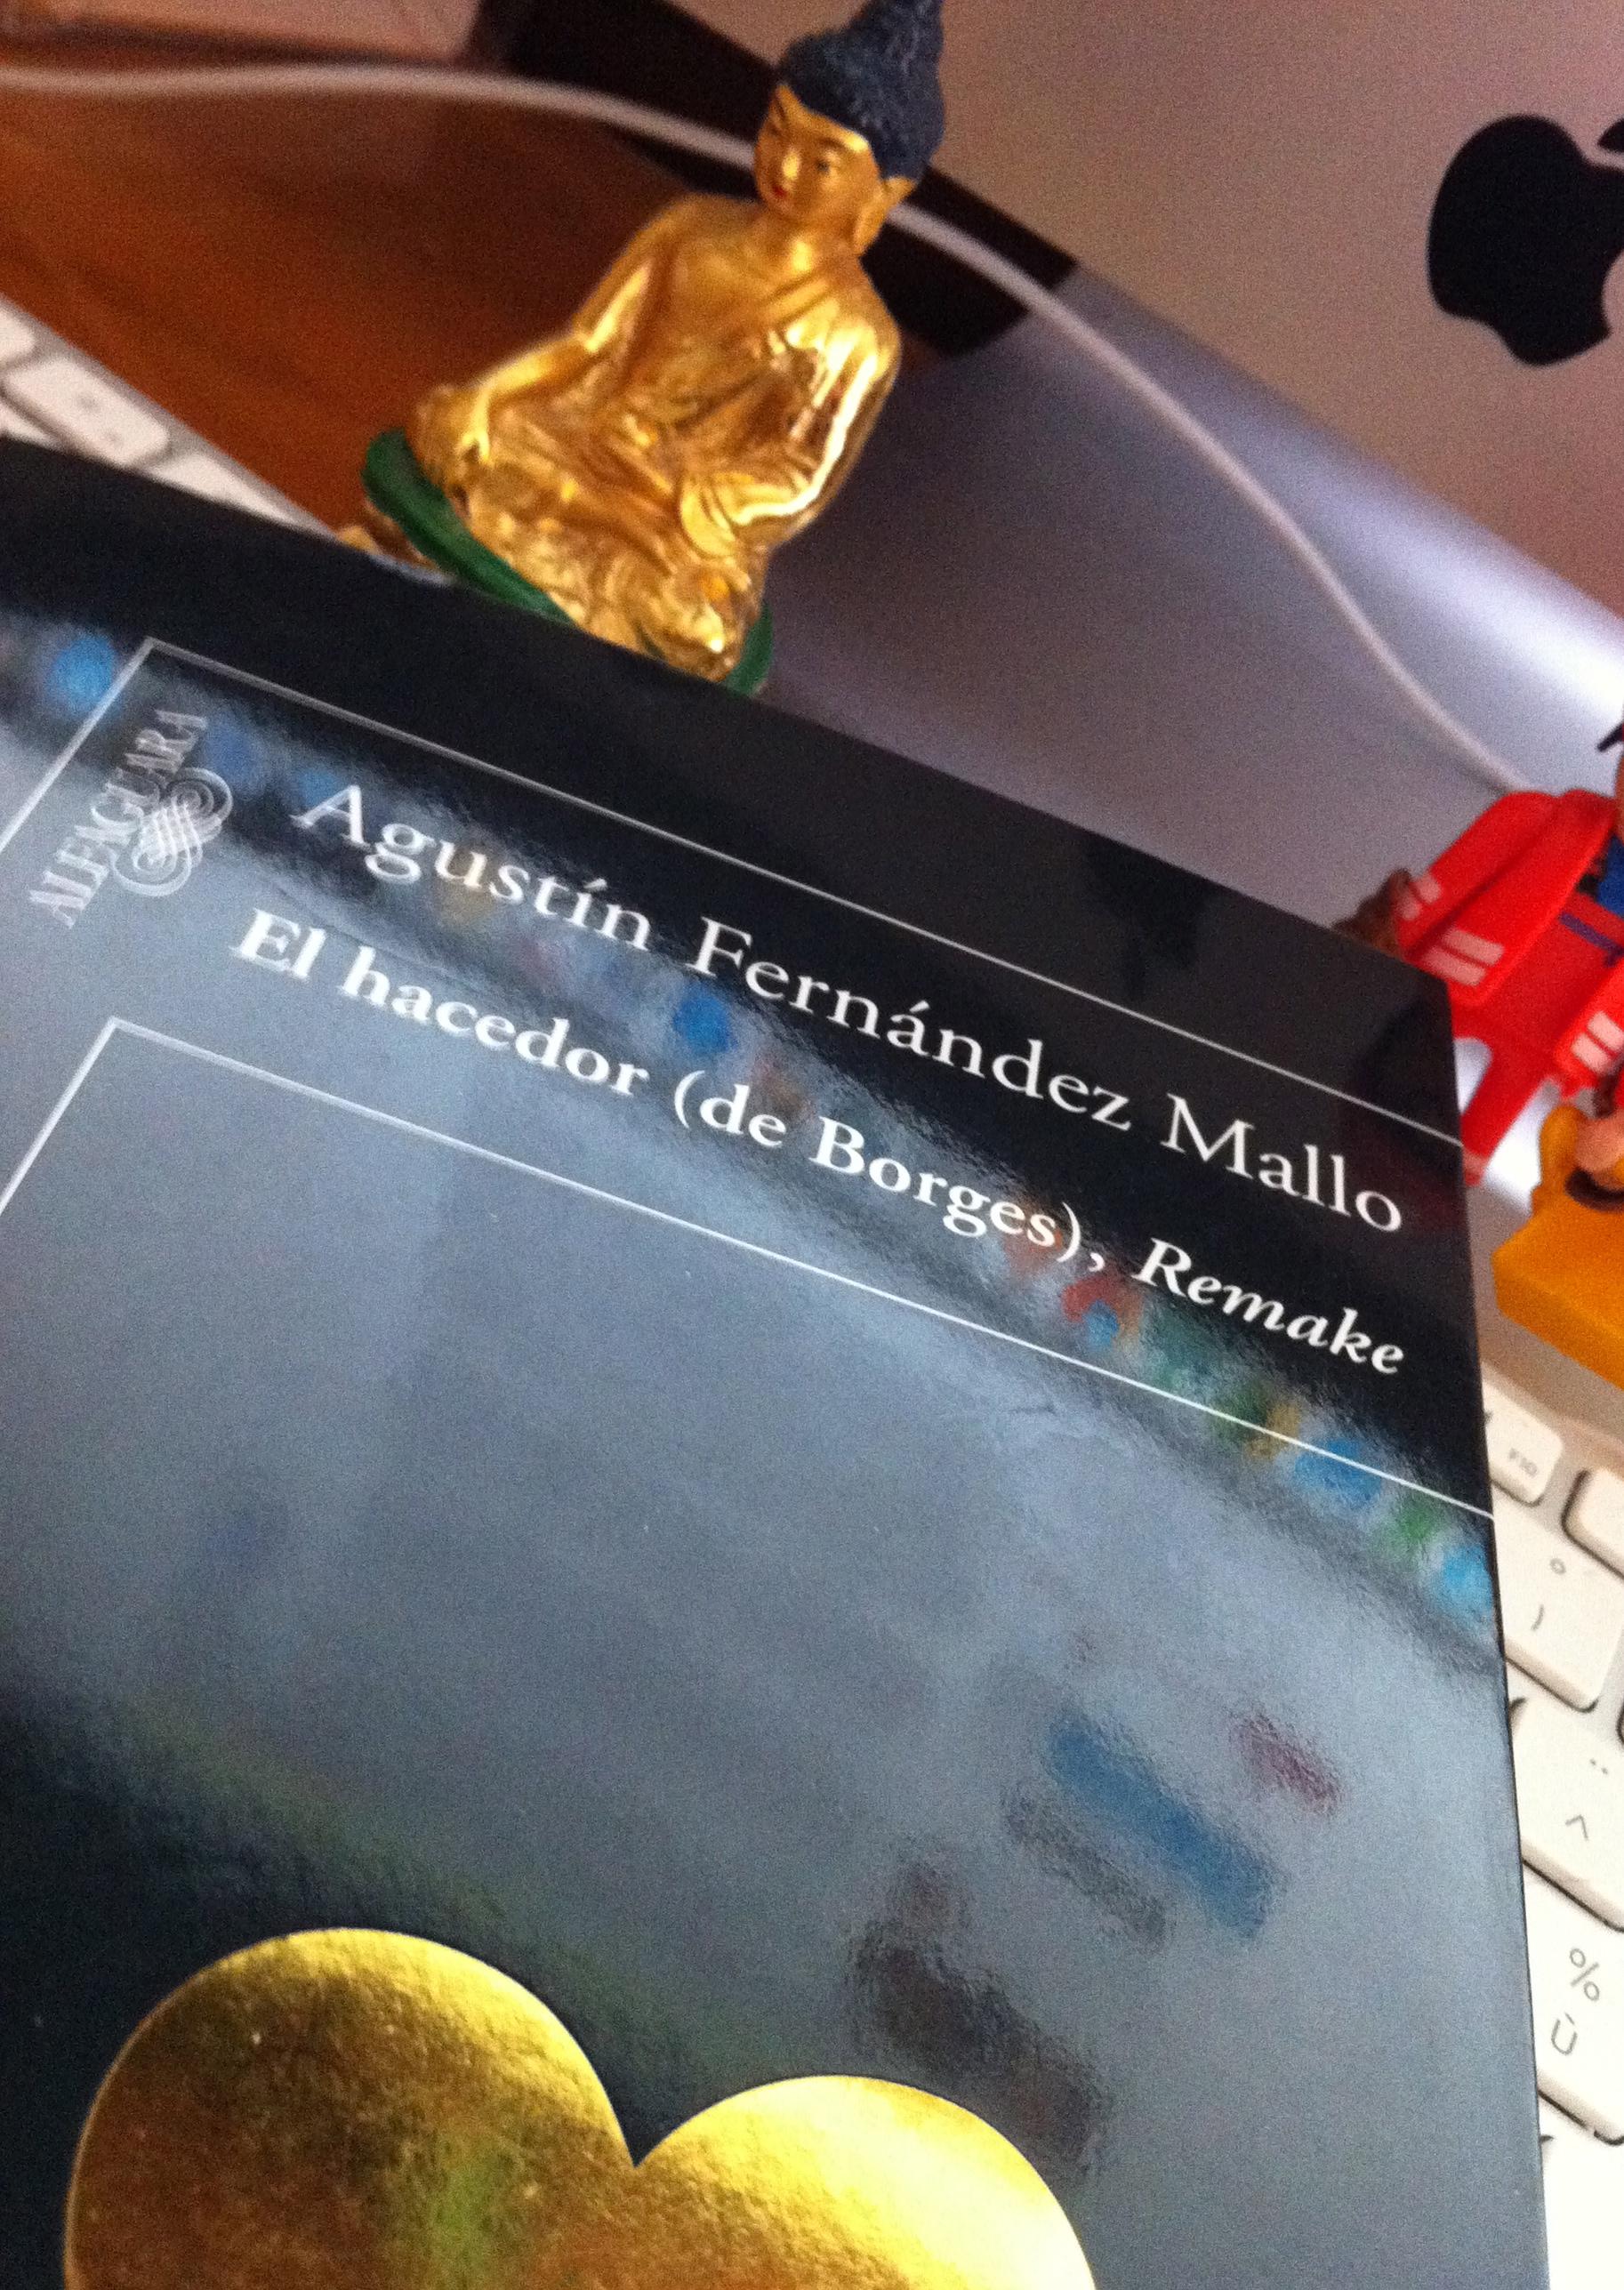 Borges et lui - Agustín Fernández Mallo - El hacedor (de Borges), Remake (Alfaguara, 2011) par François Monti